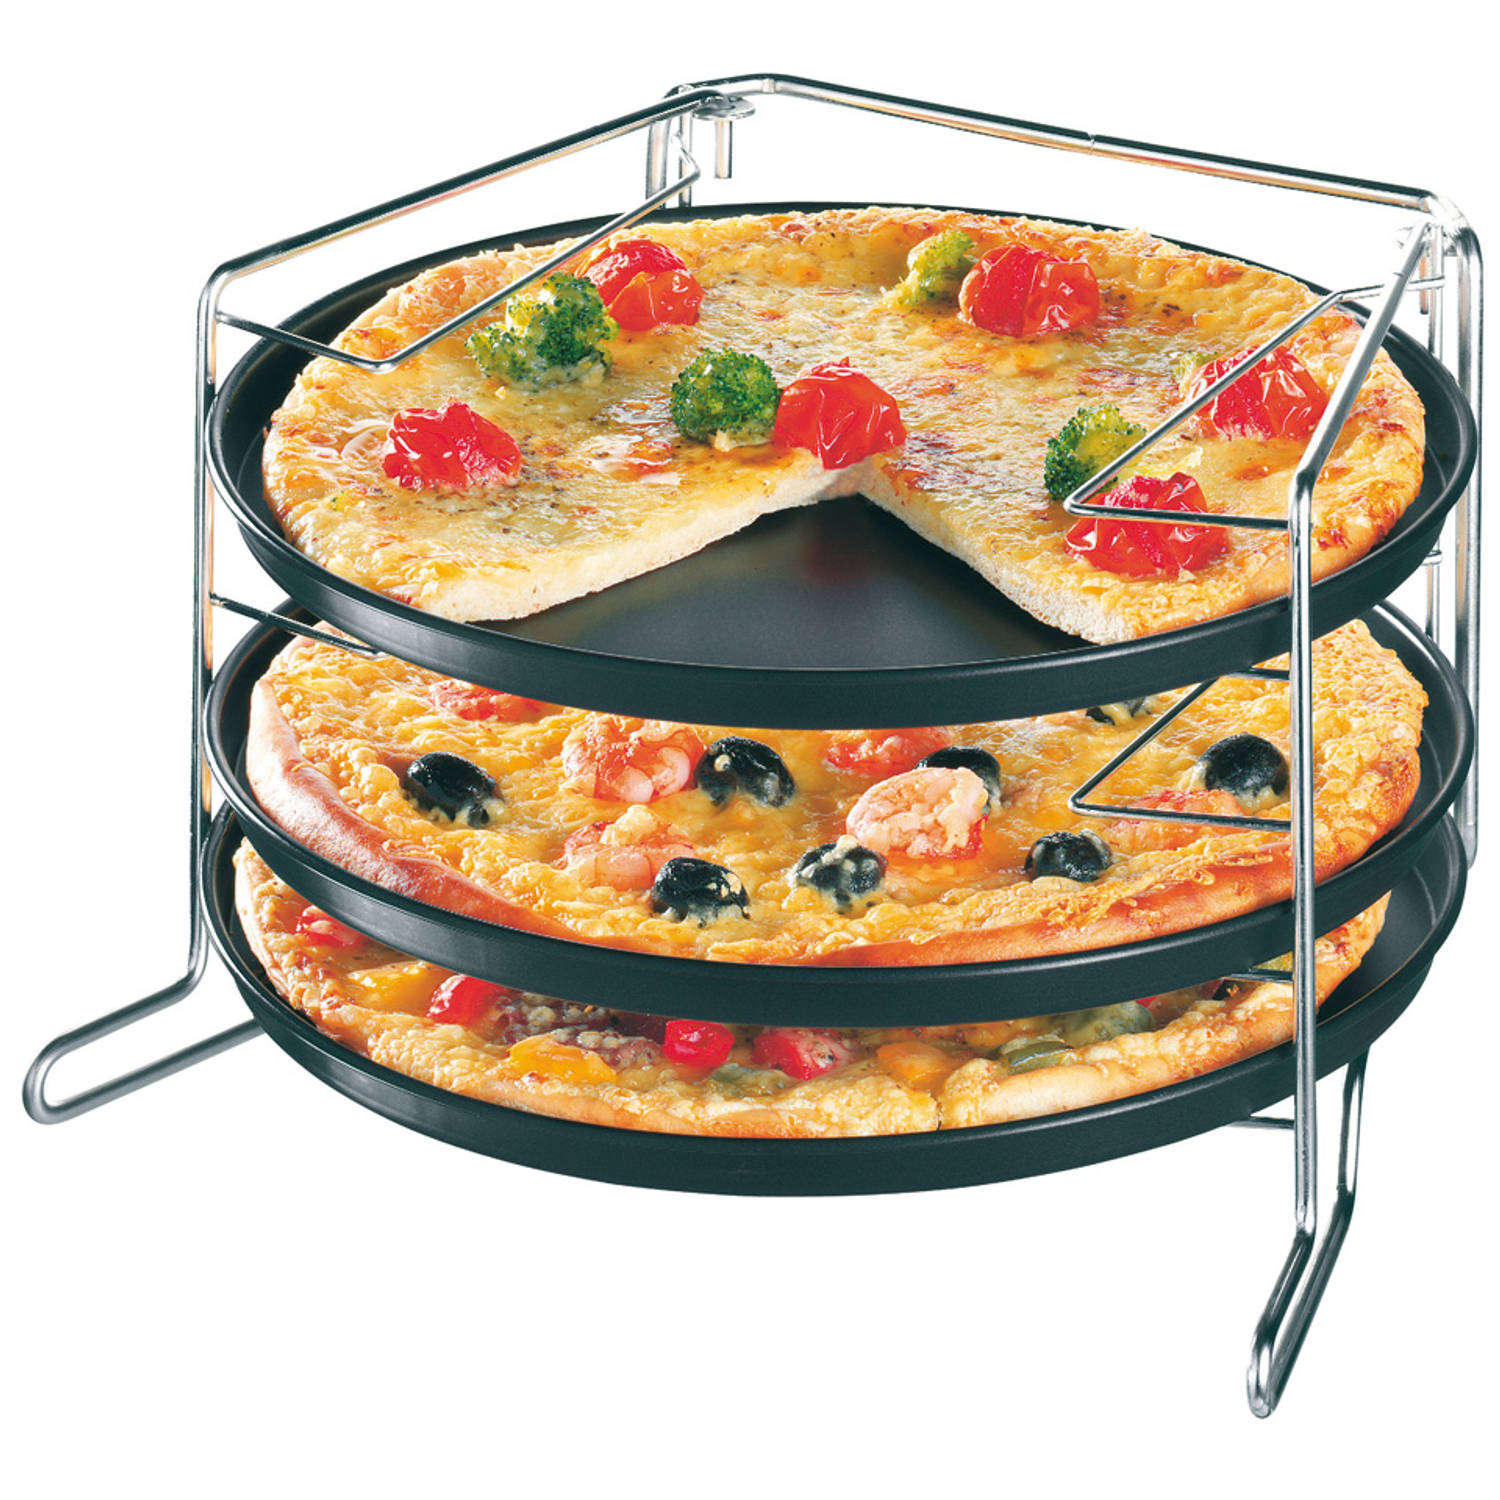 форма для запекания пиццы в духовке фото 45